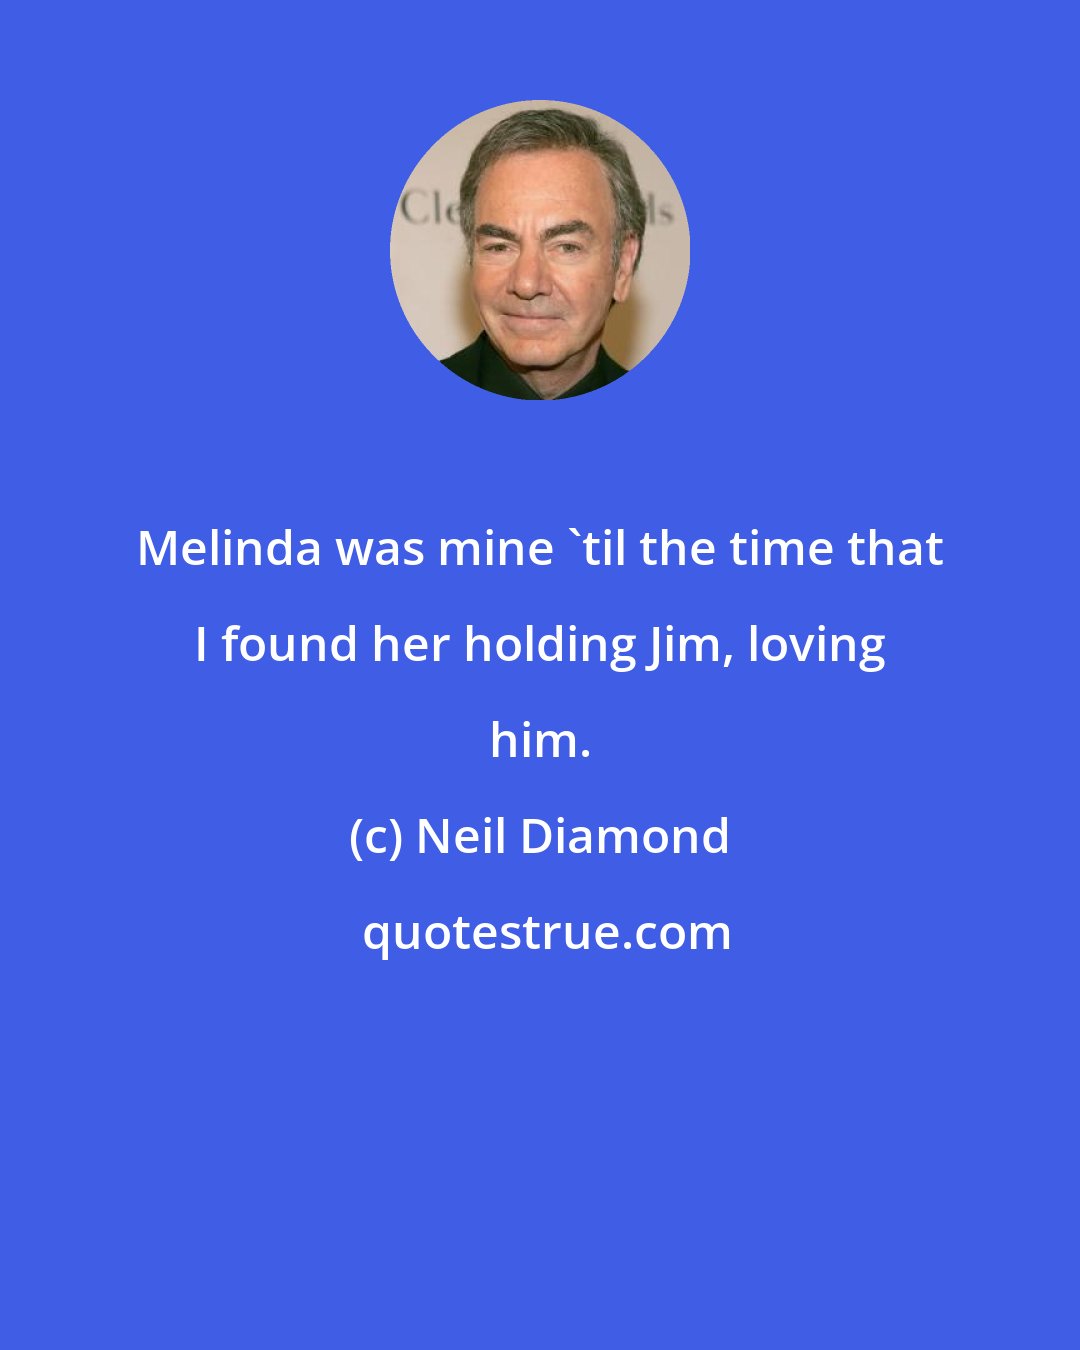 Neil Diamond: Melinda was mine 'til the time that I found her holding Jim, loving him.